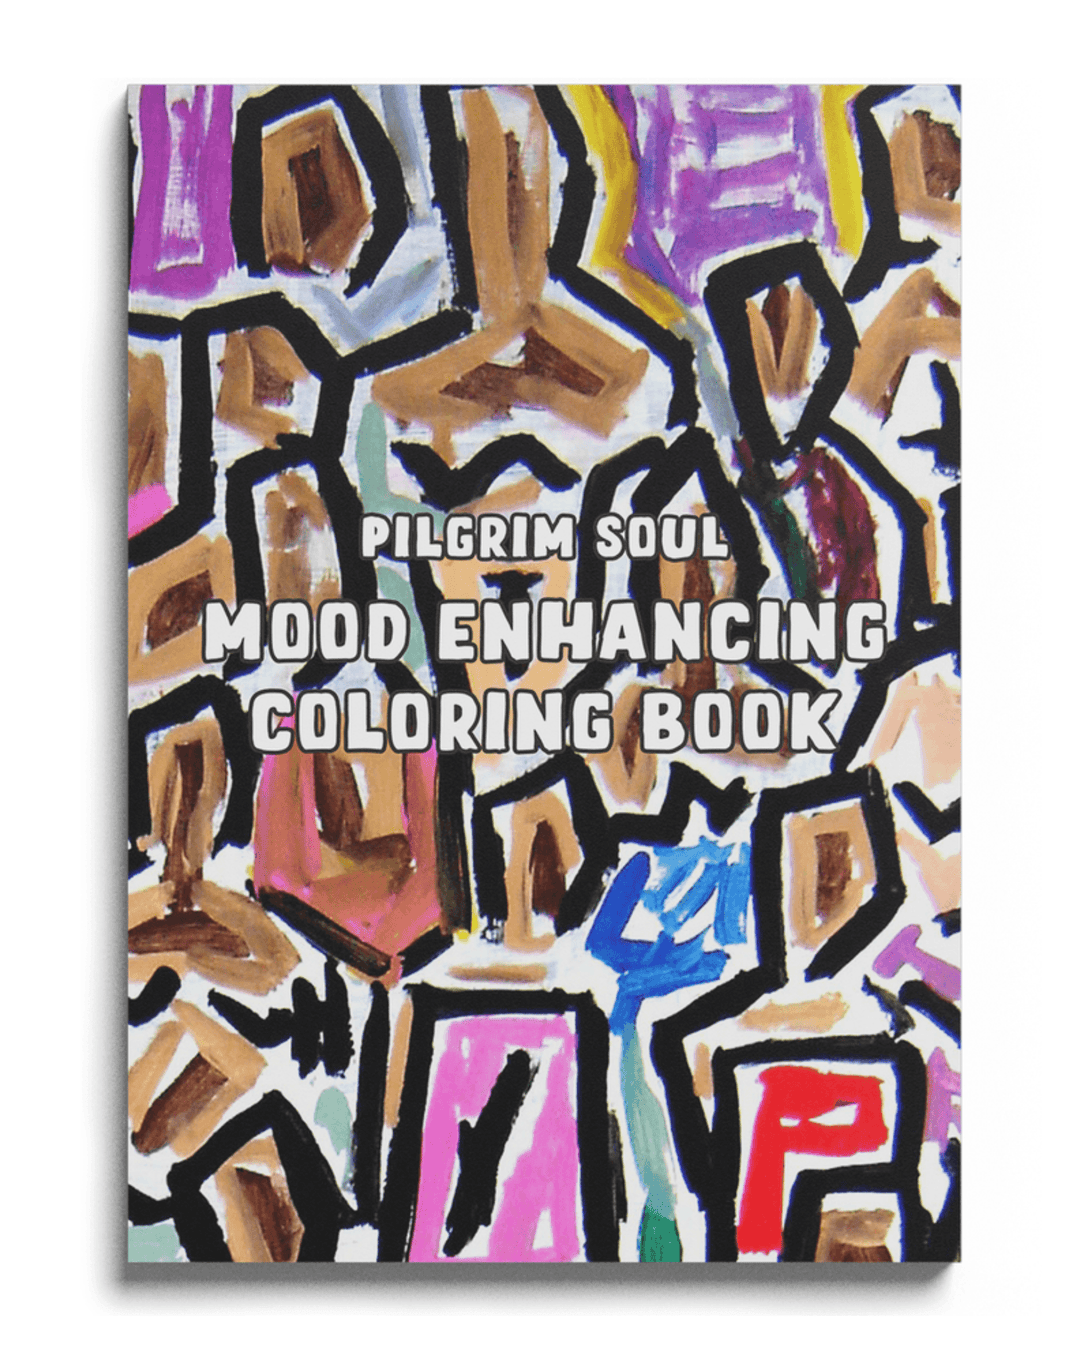 Mood Enhancing Coloring Book — PILGRIM SOUL CREATIVE